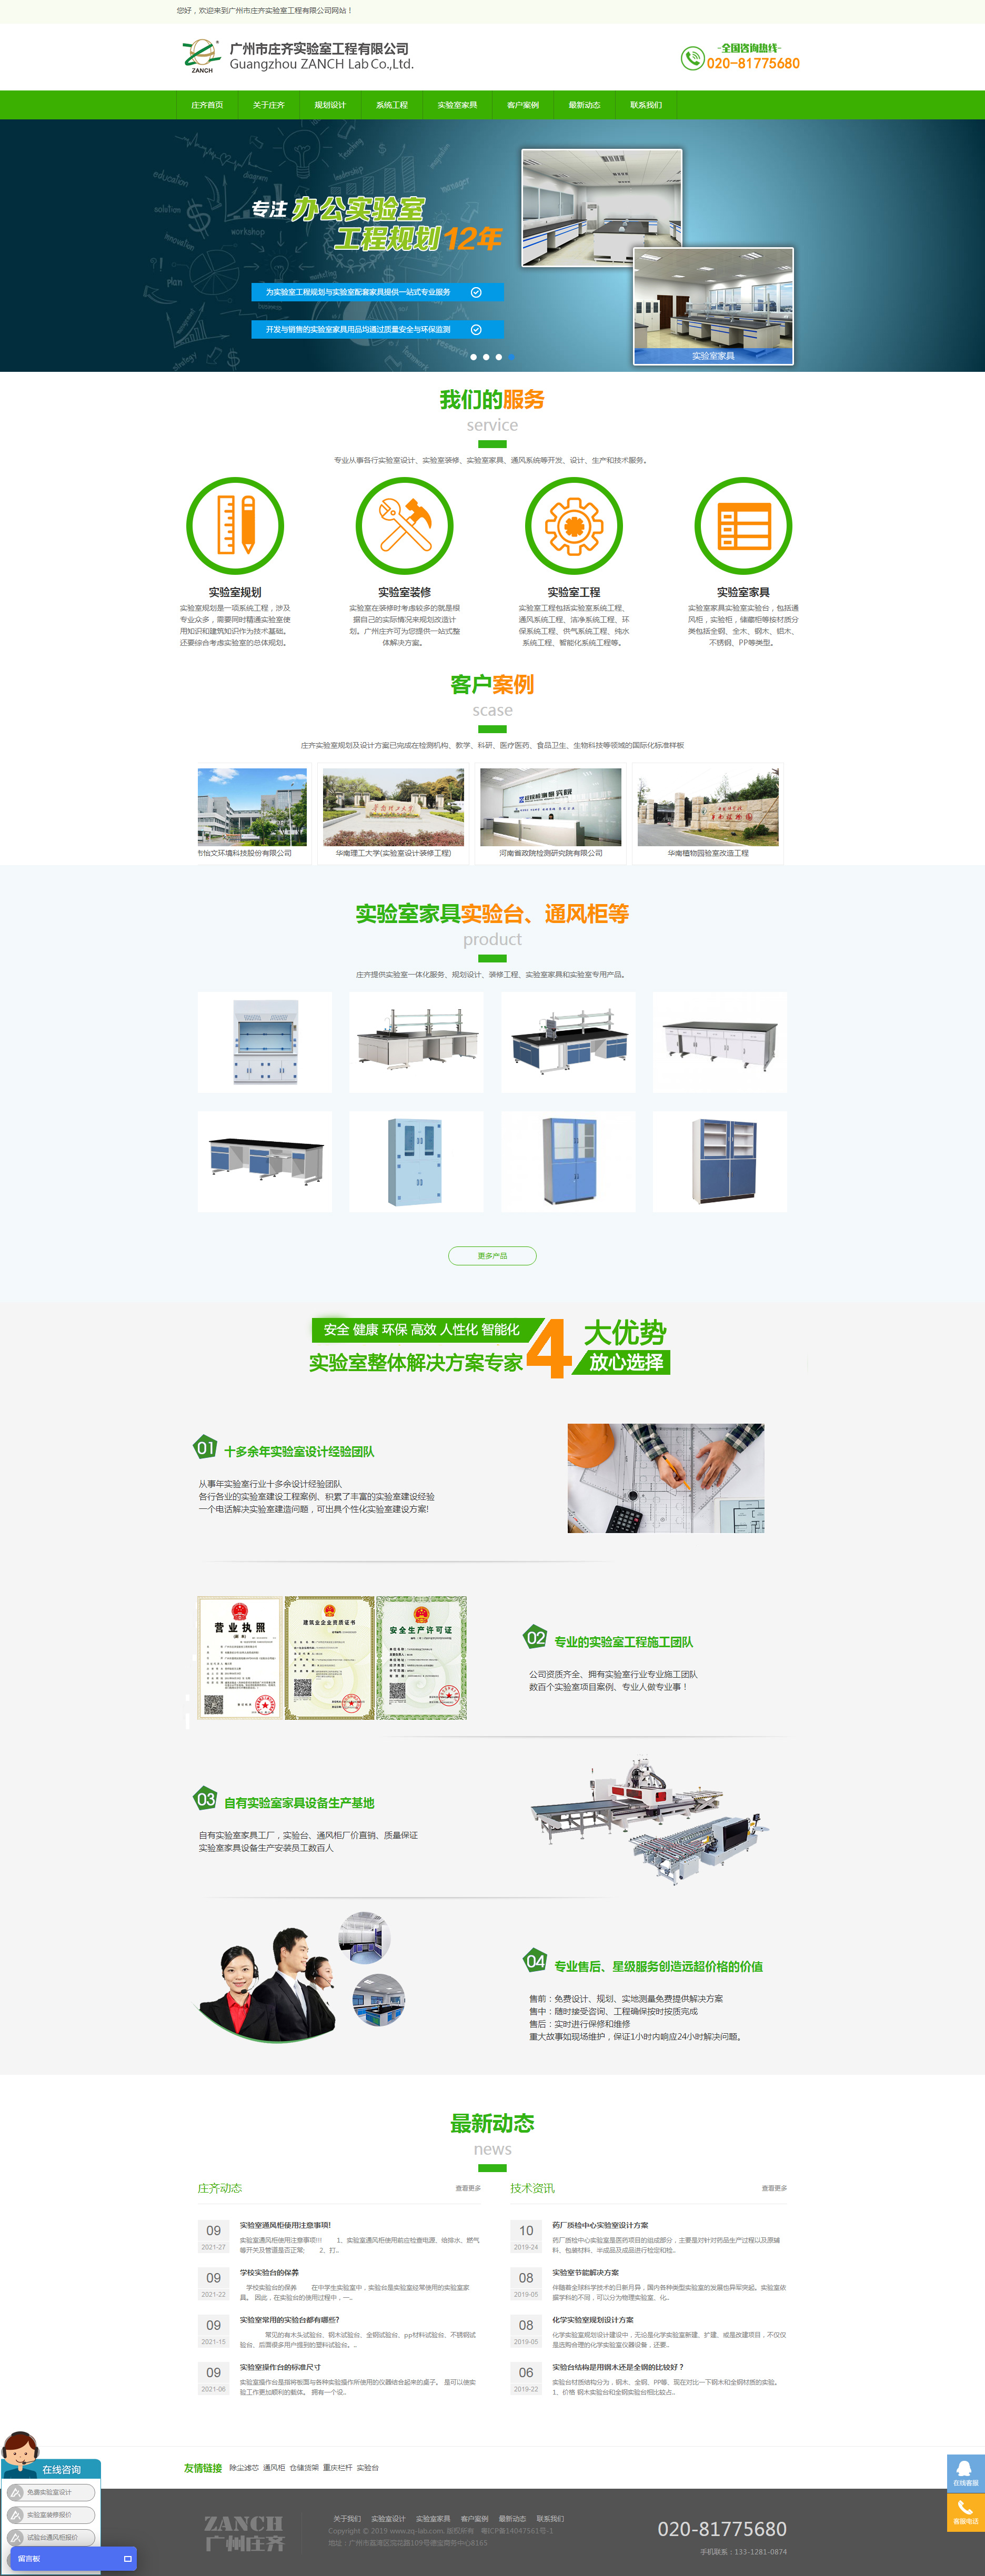 广州庄齐实验室工程网站制作首页设计效果图